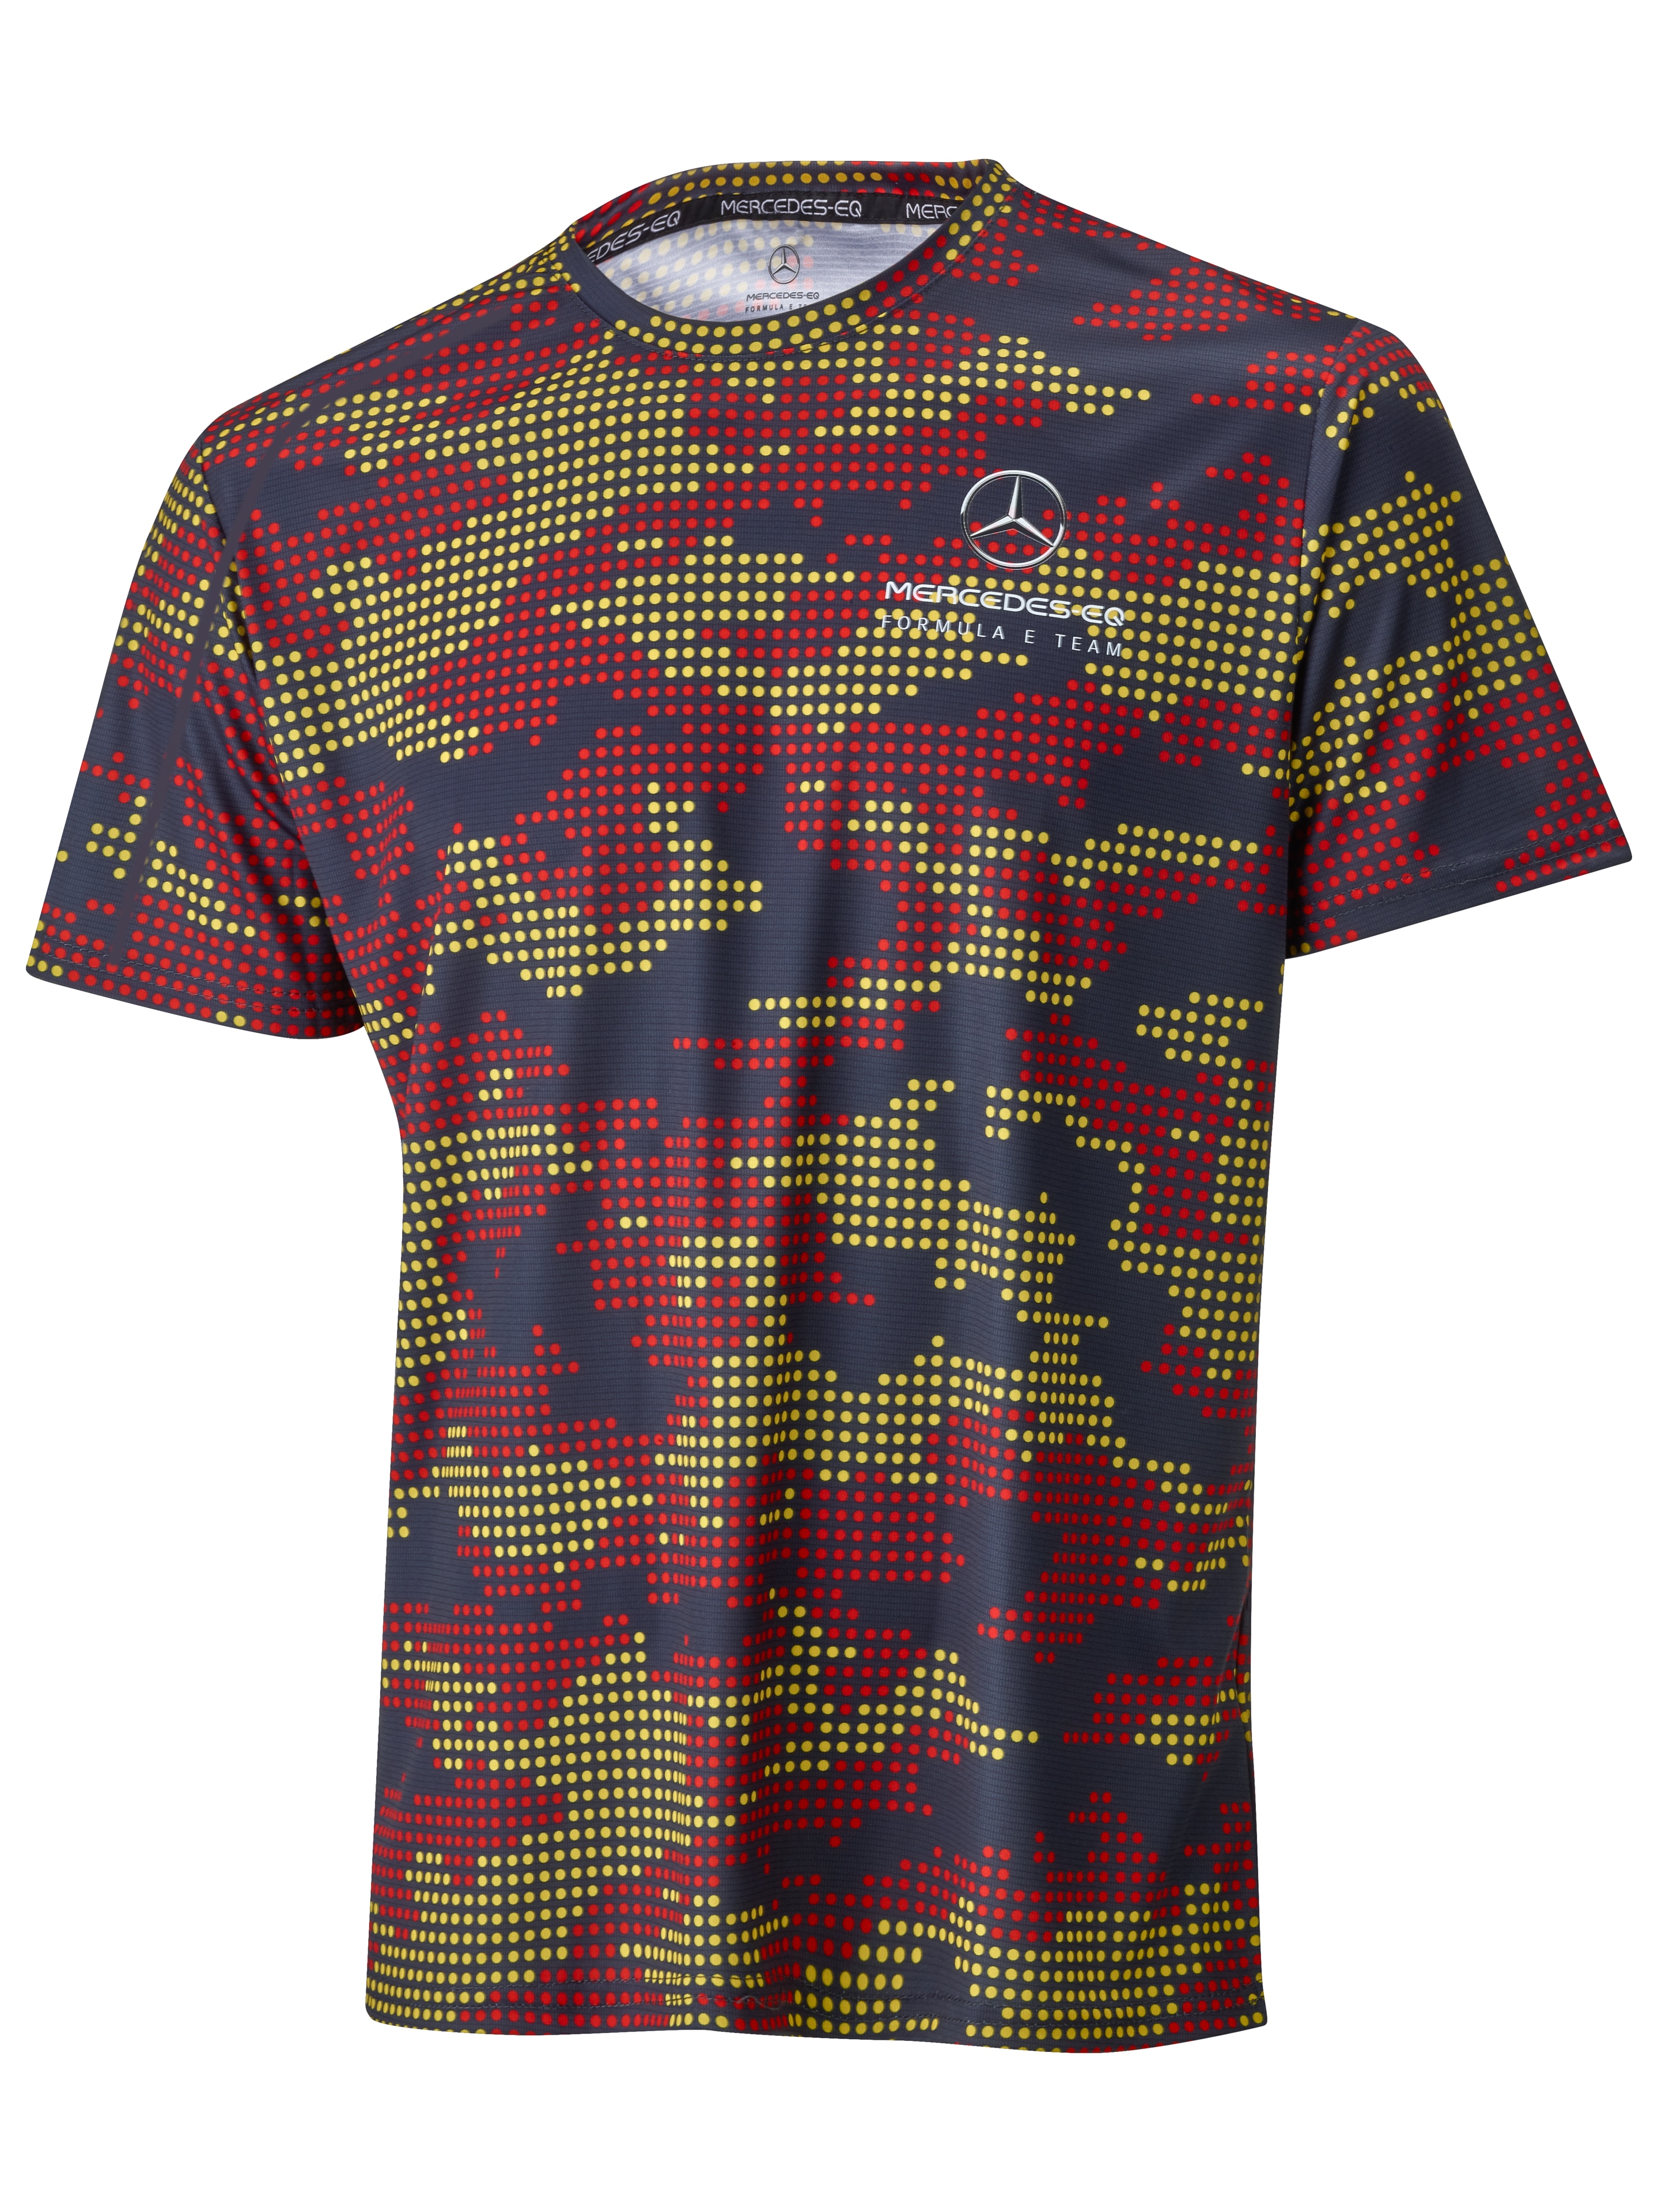 T-Shirt Herren - schwarz / rot / gelb, XXL